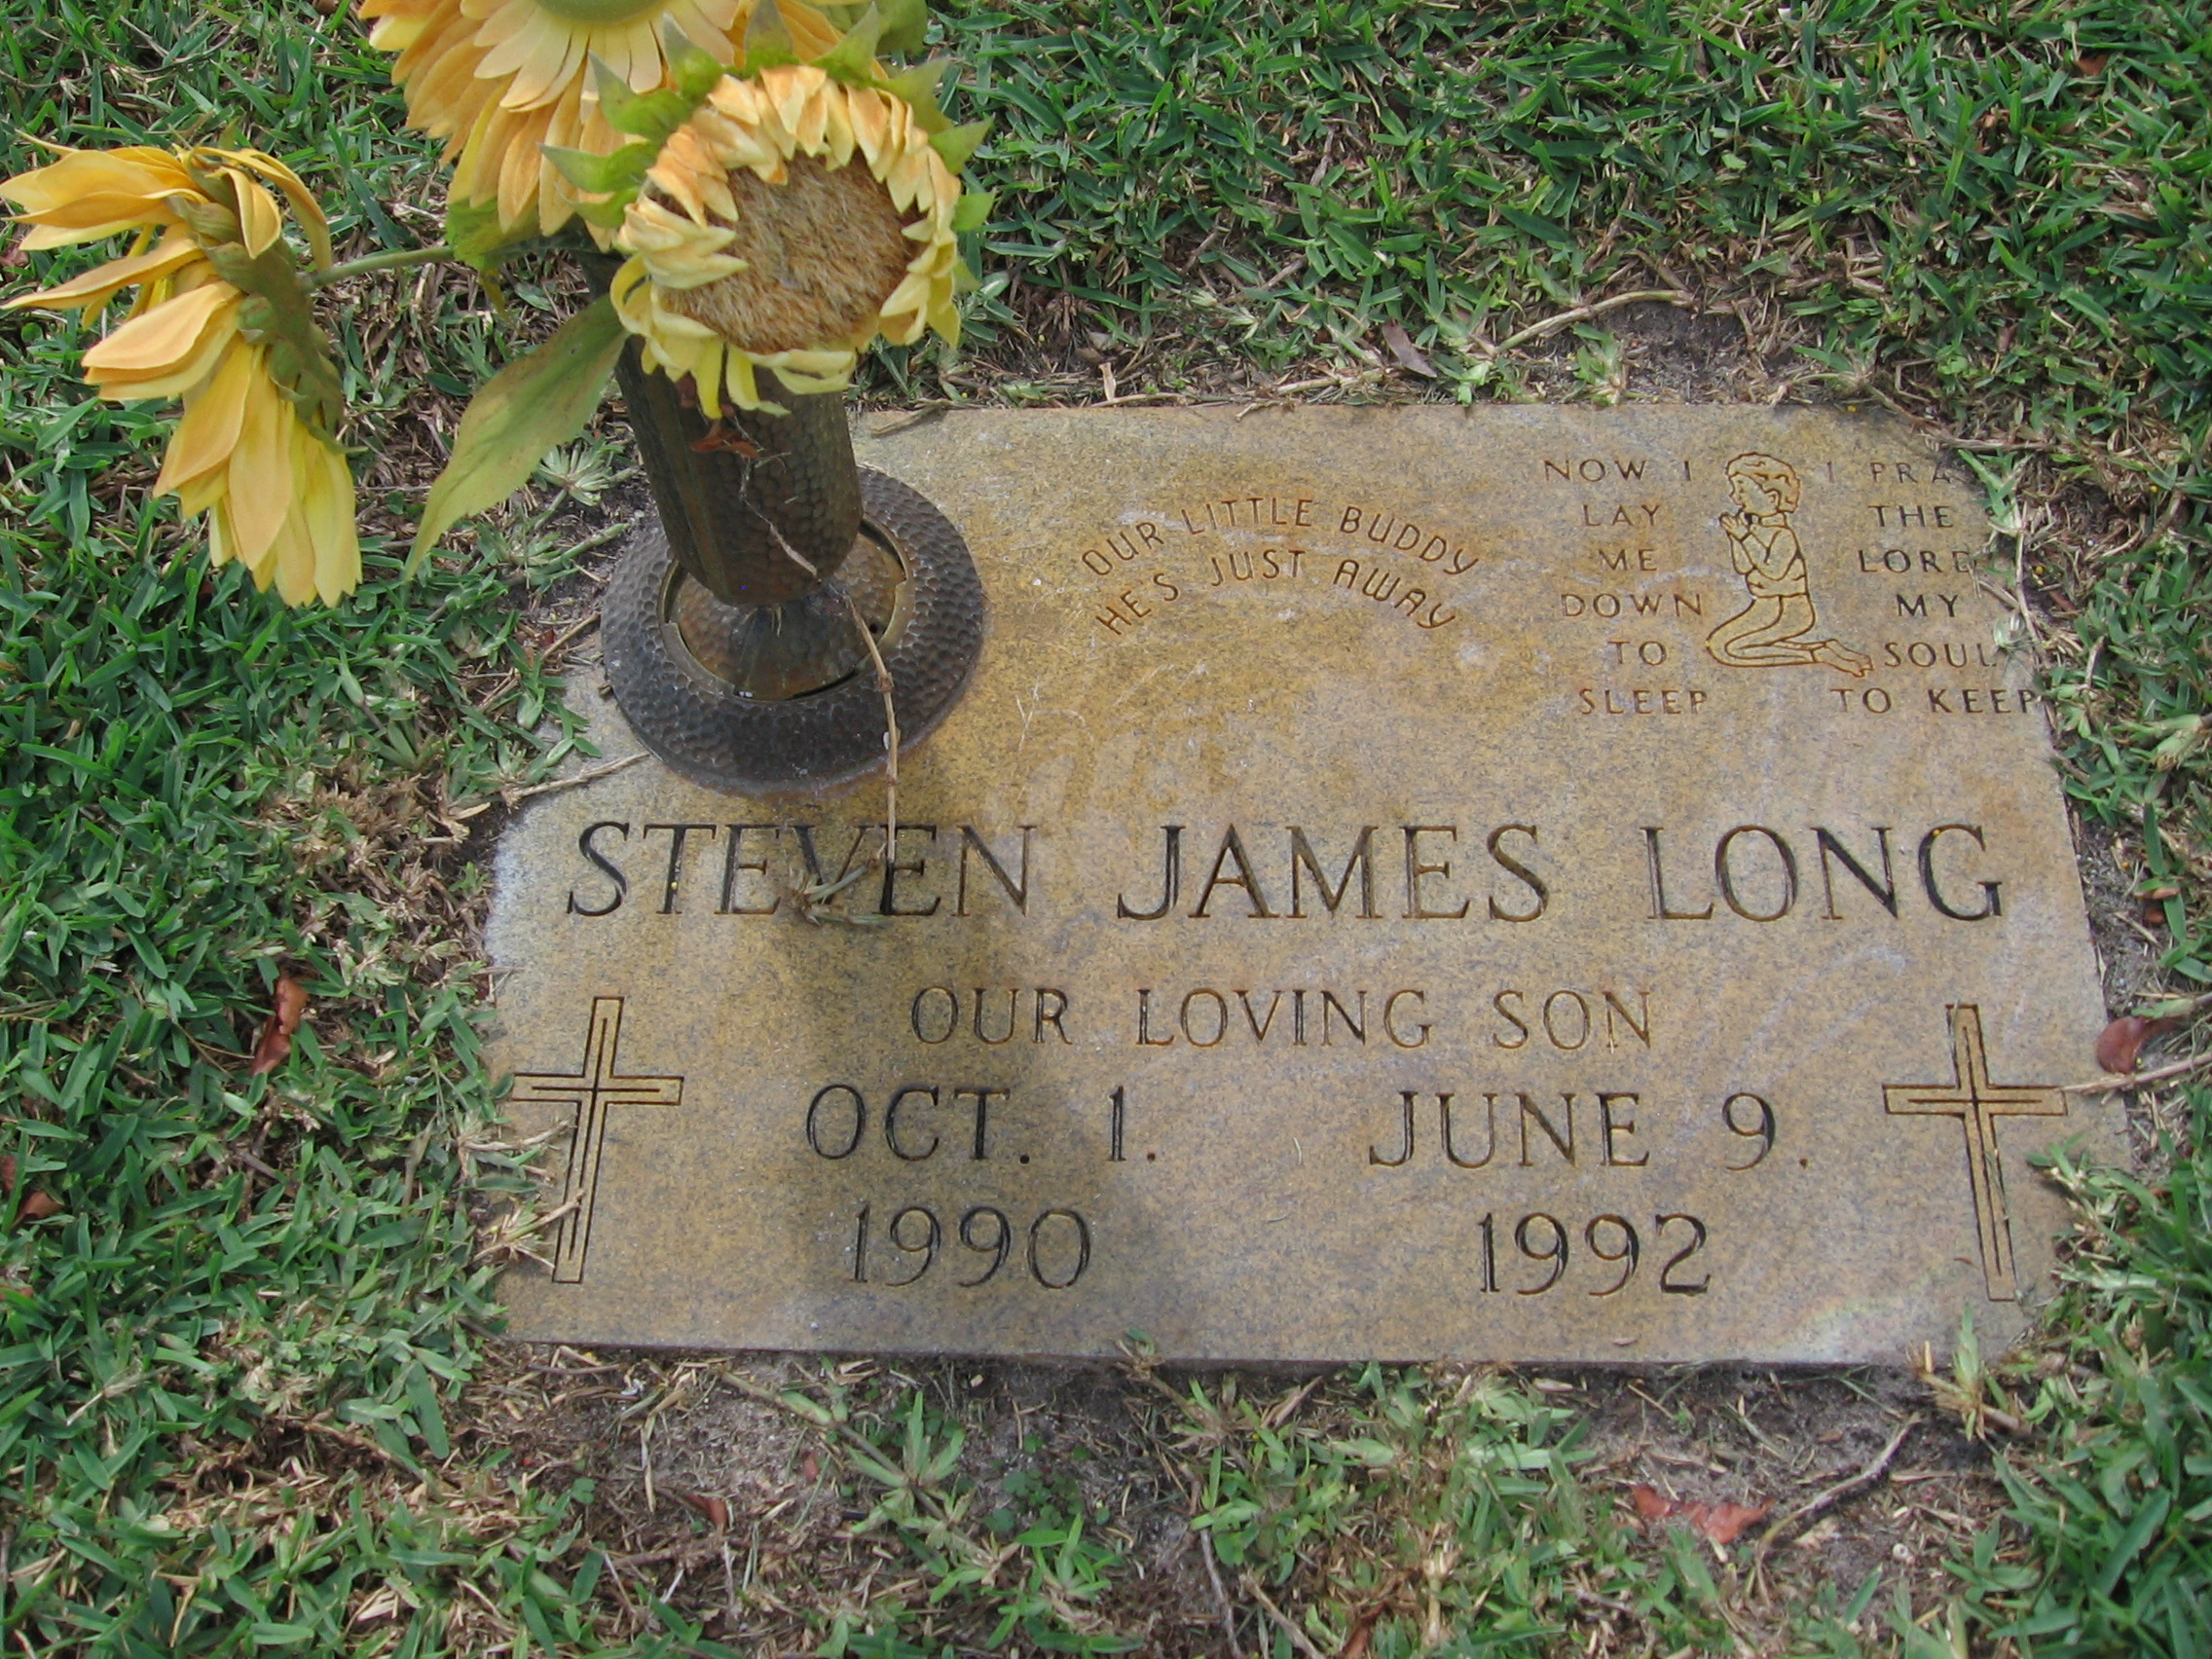 Steven James Long